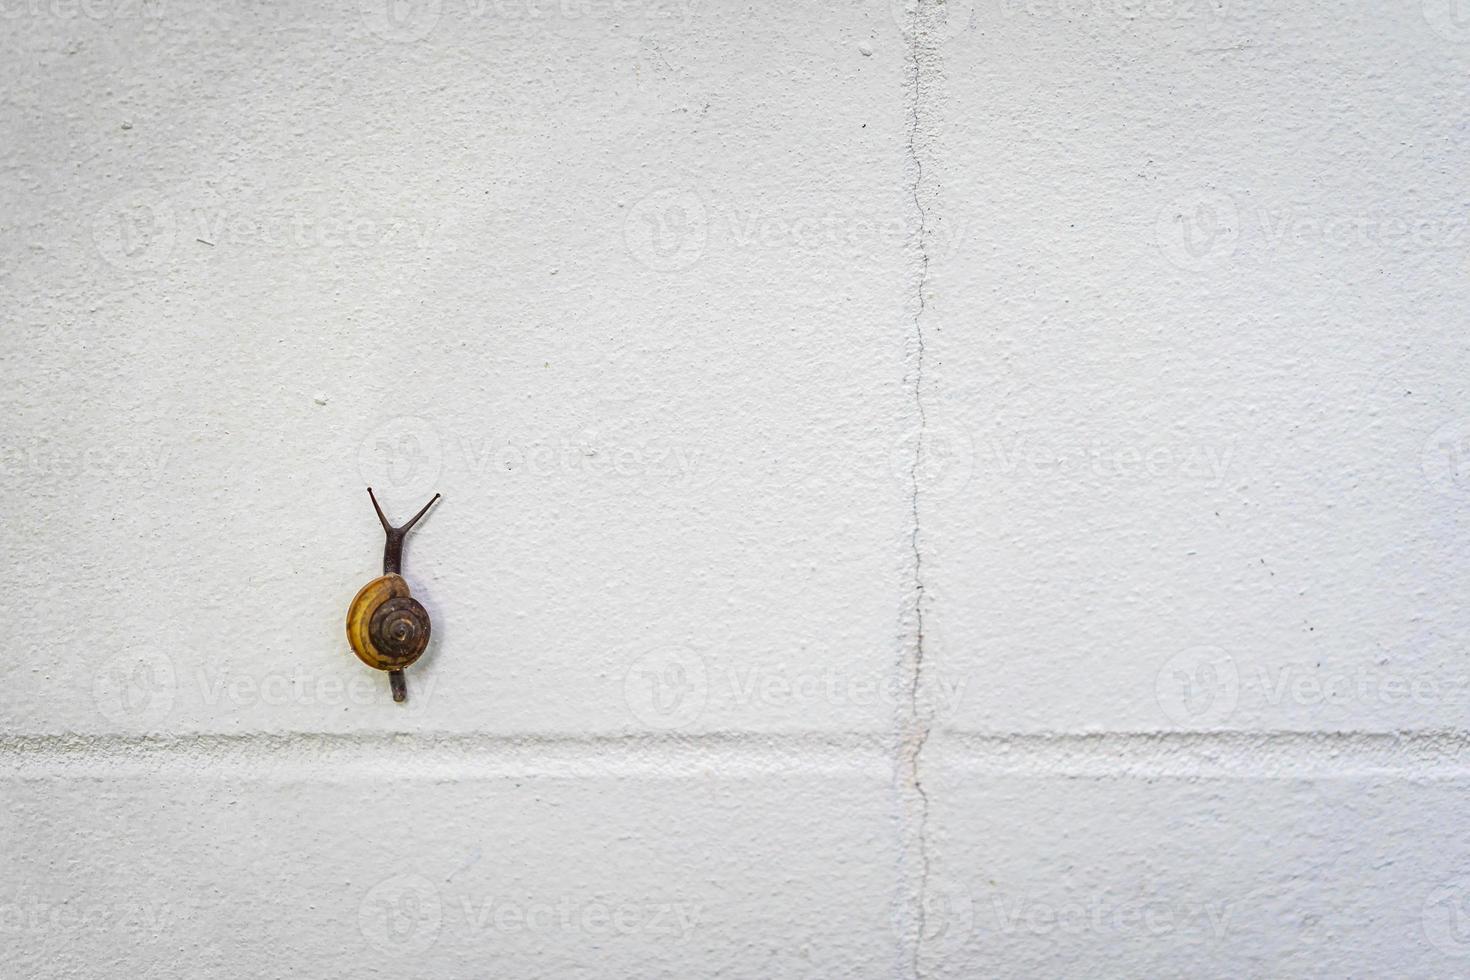 piccola lumaca nera e marrone si arrampica su un muro bianco. foto